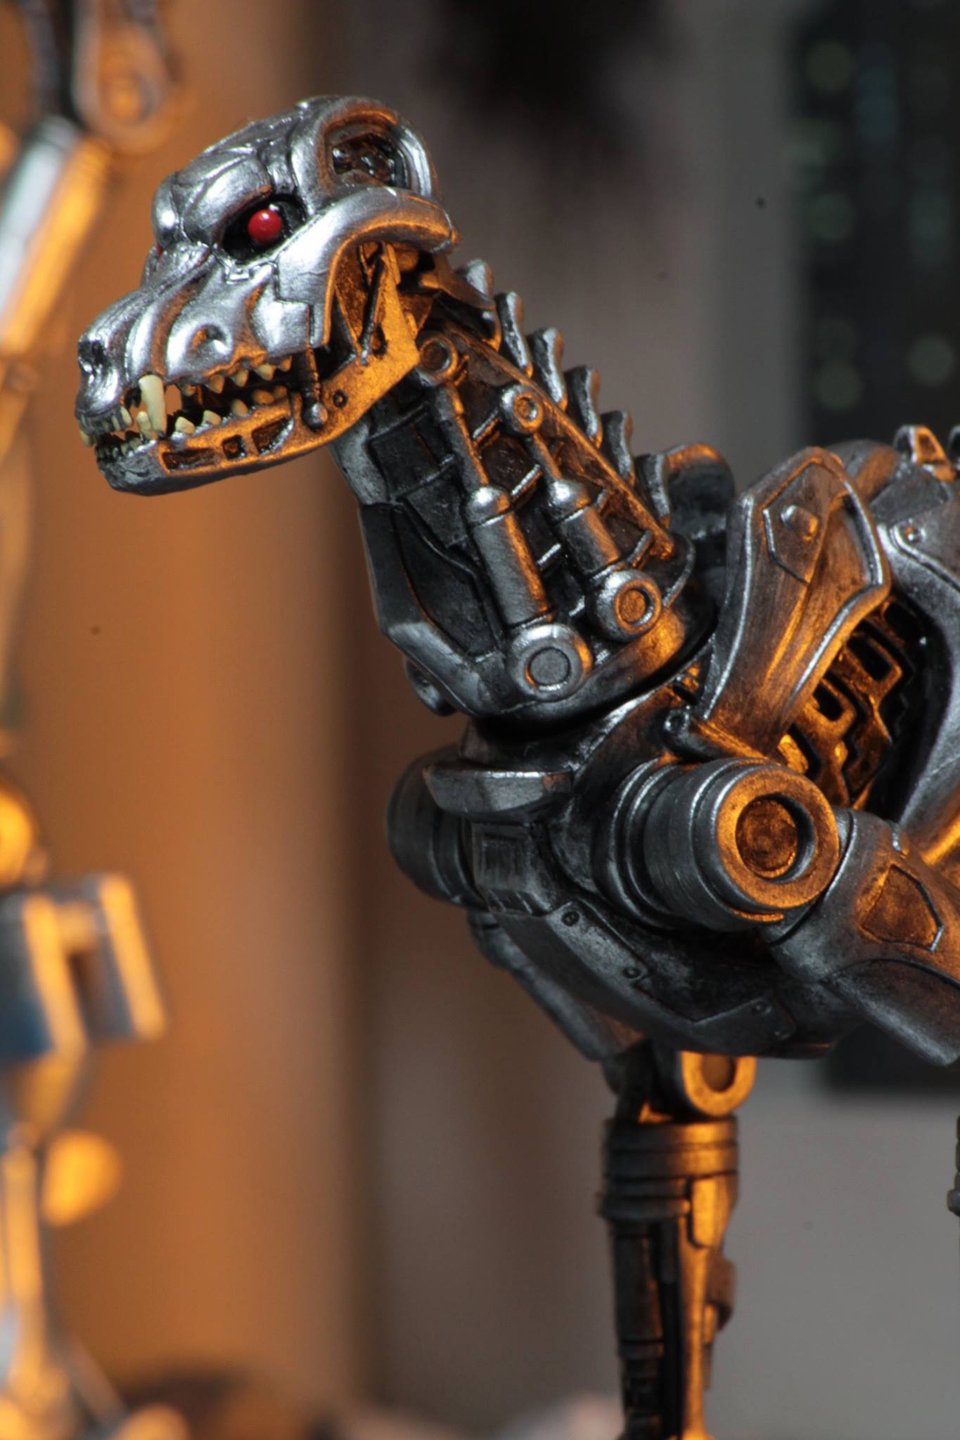 RoboCop vs. Terminator Action Figures